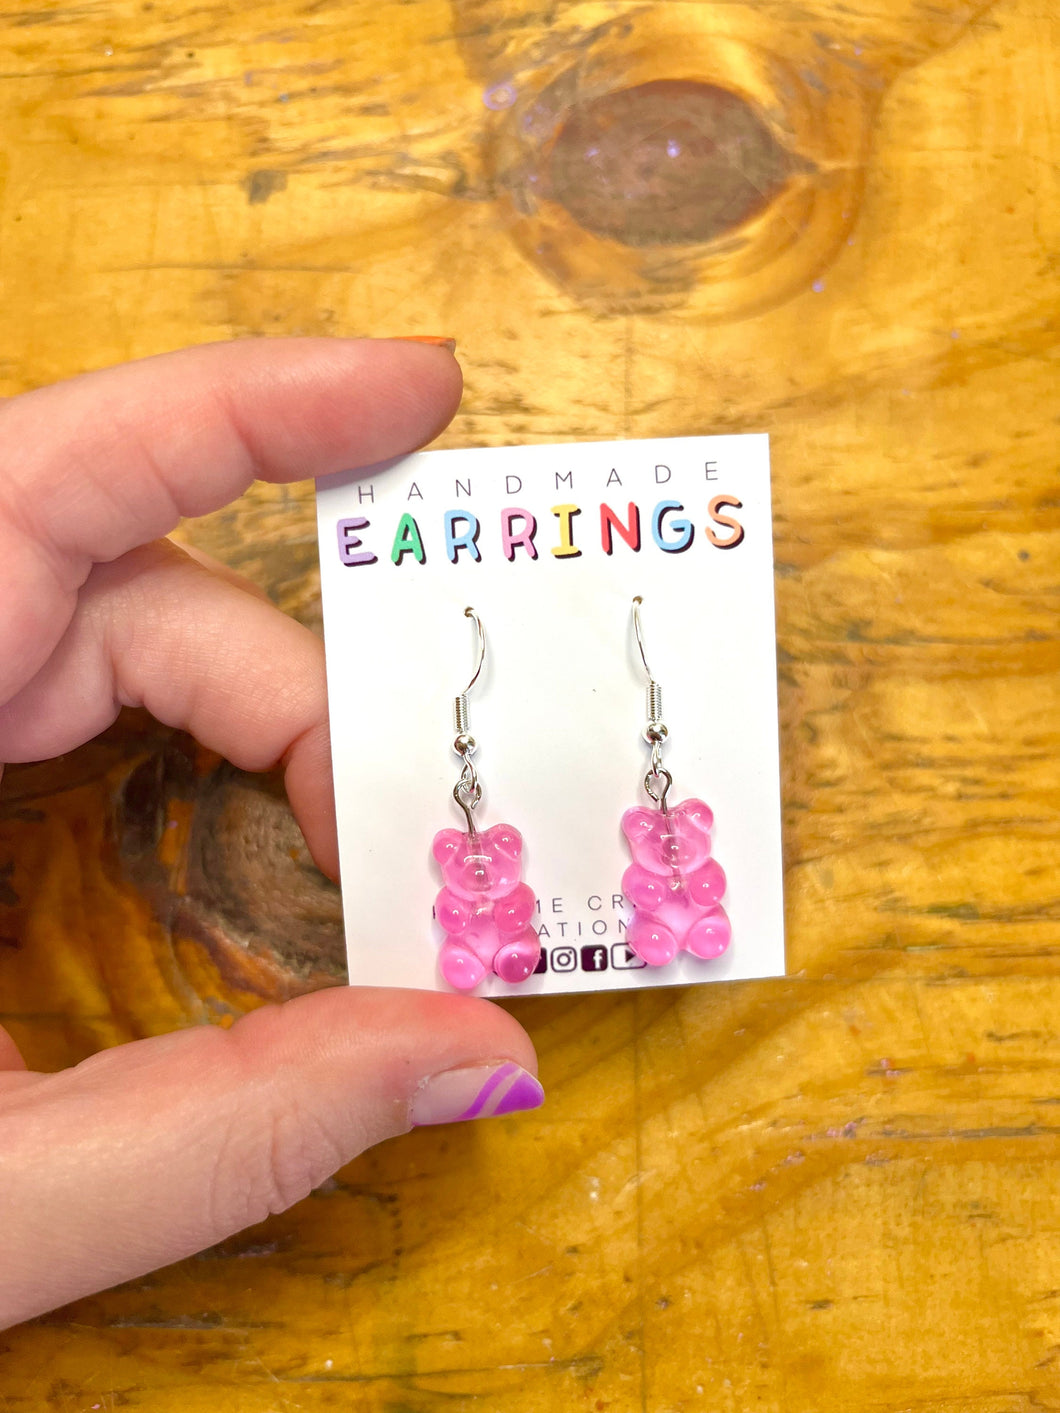 Pink Gummy Bear Earrings